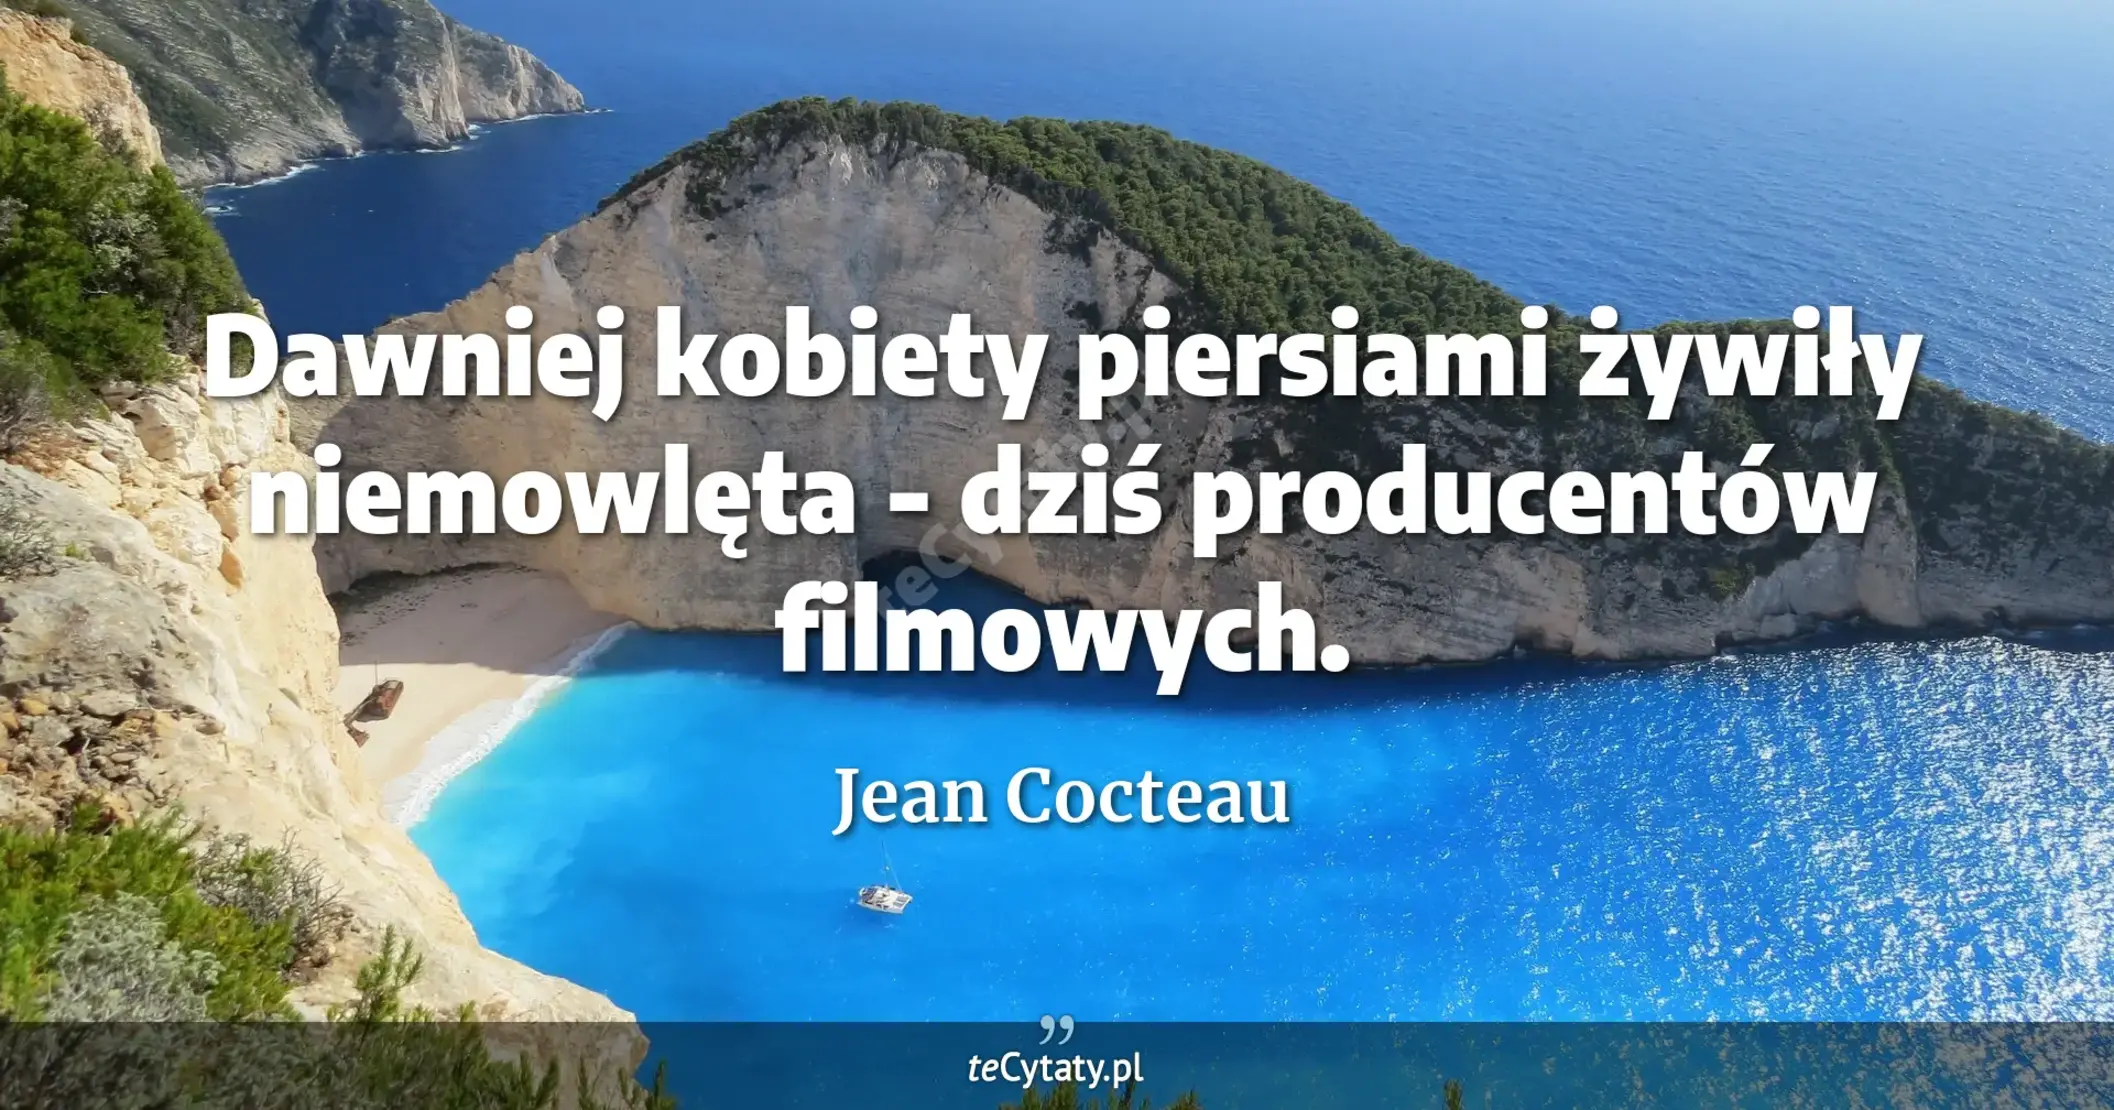 Dawniej kobiety piersiami żywiły niemowlęta - dziś producentów filmowych. - Jean Cocteau